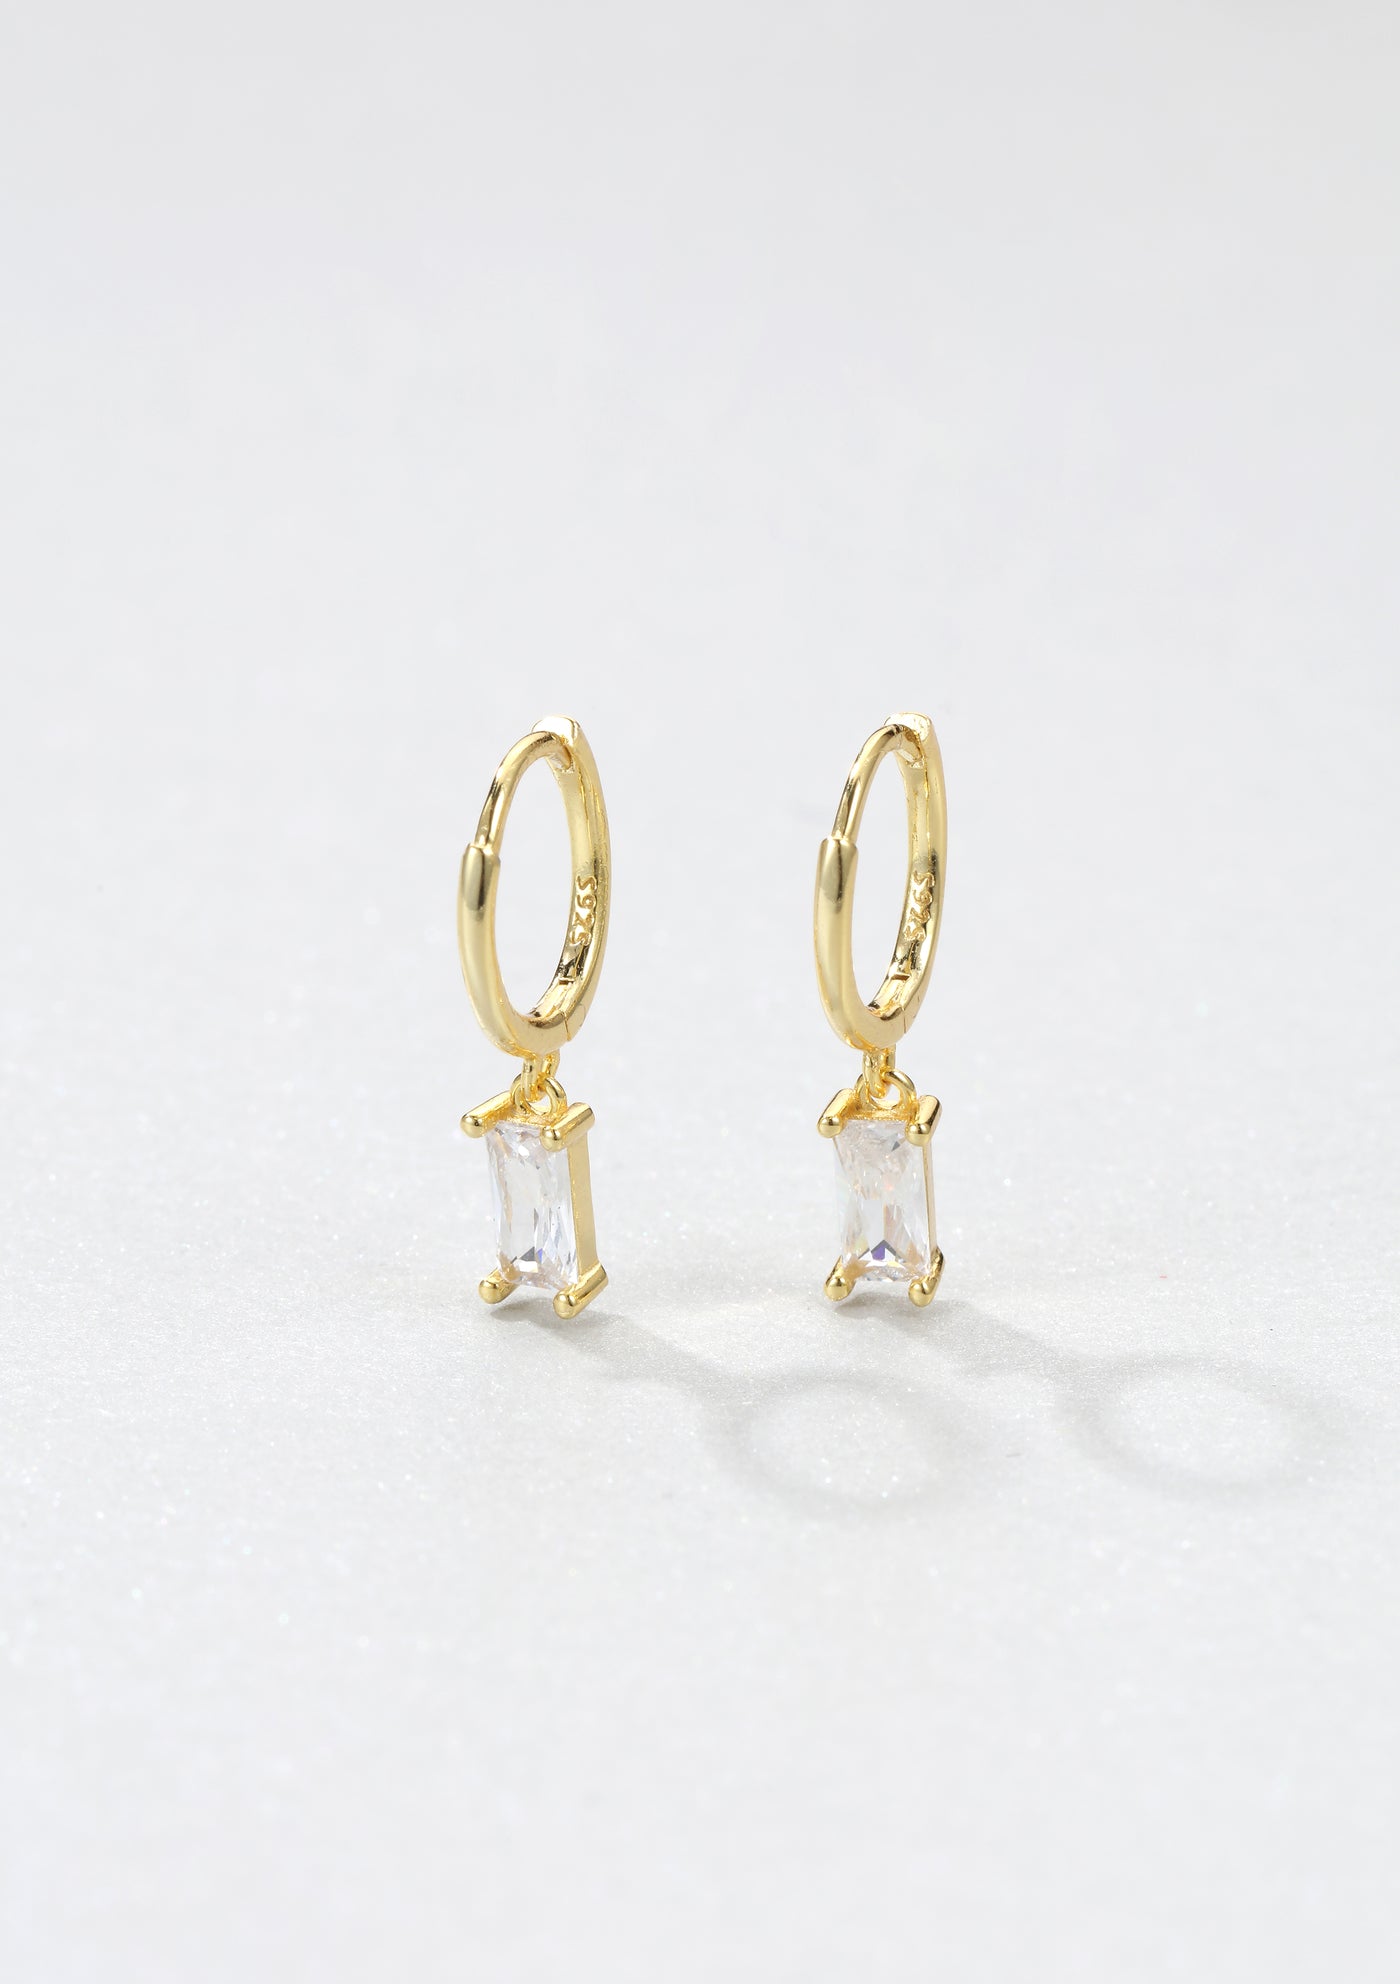 Baguette Gemstone Huggie Earrings Sterling Silver Gold